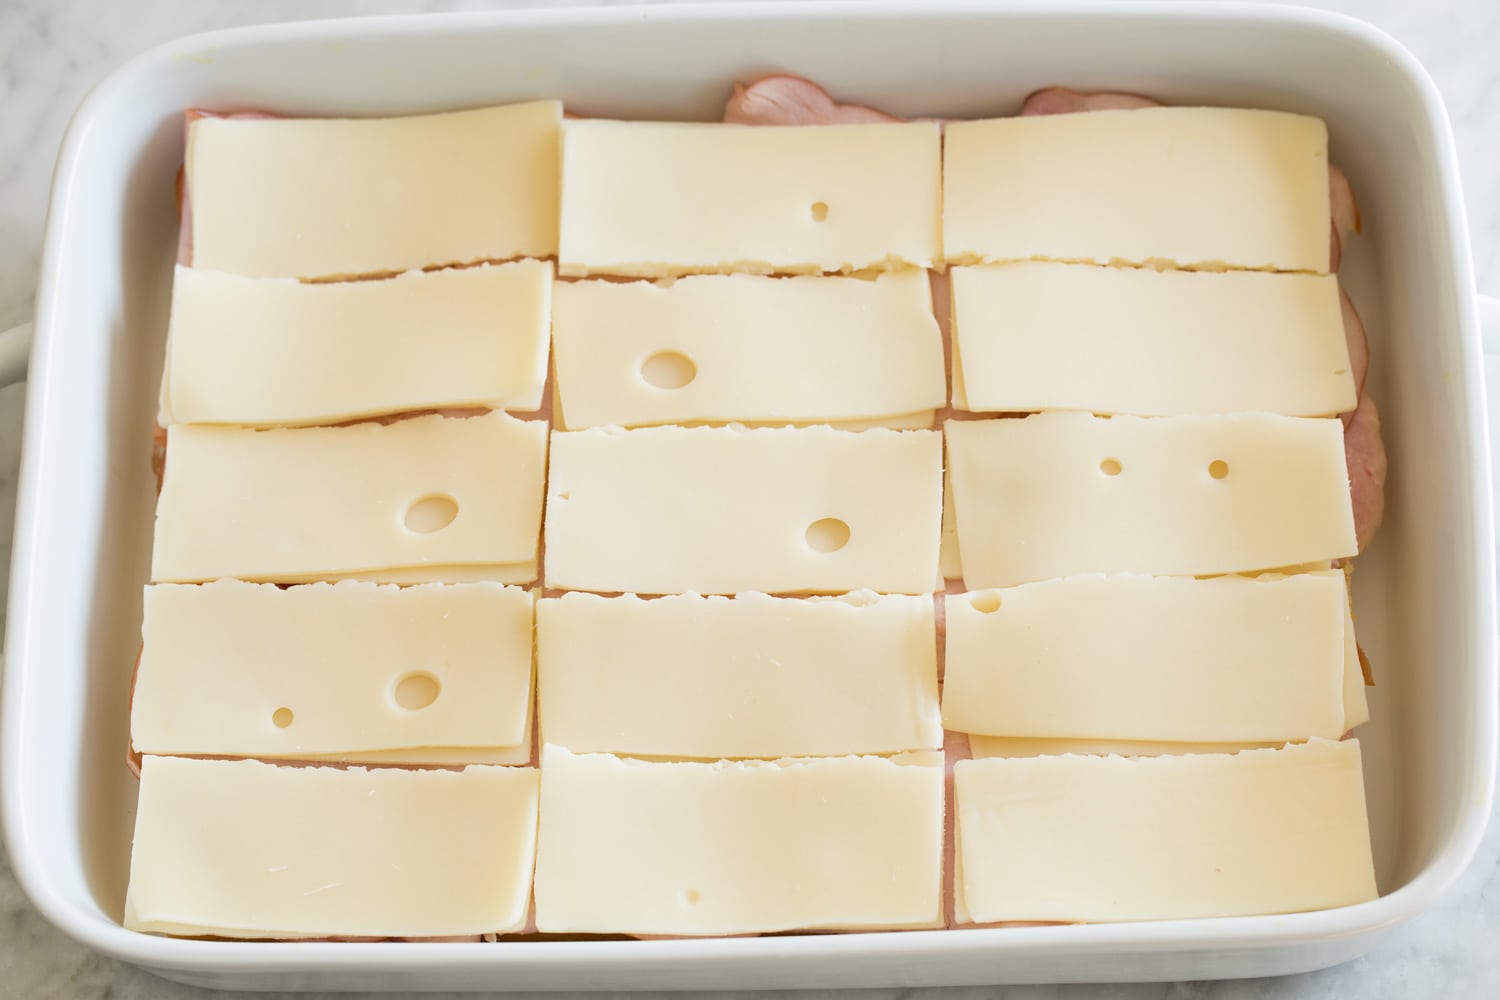 Layering swiss cheese over ham layer of sliders.